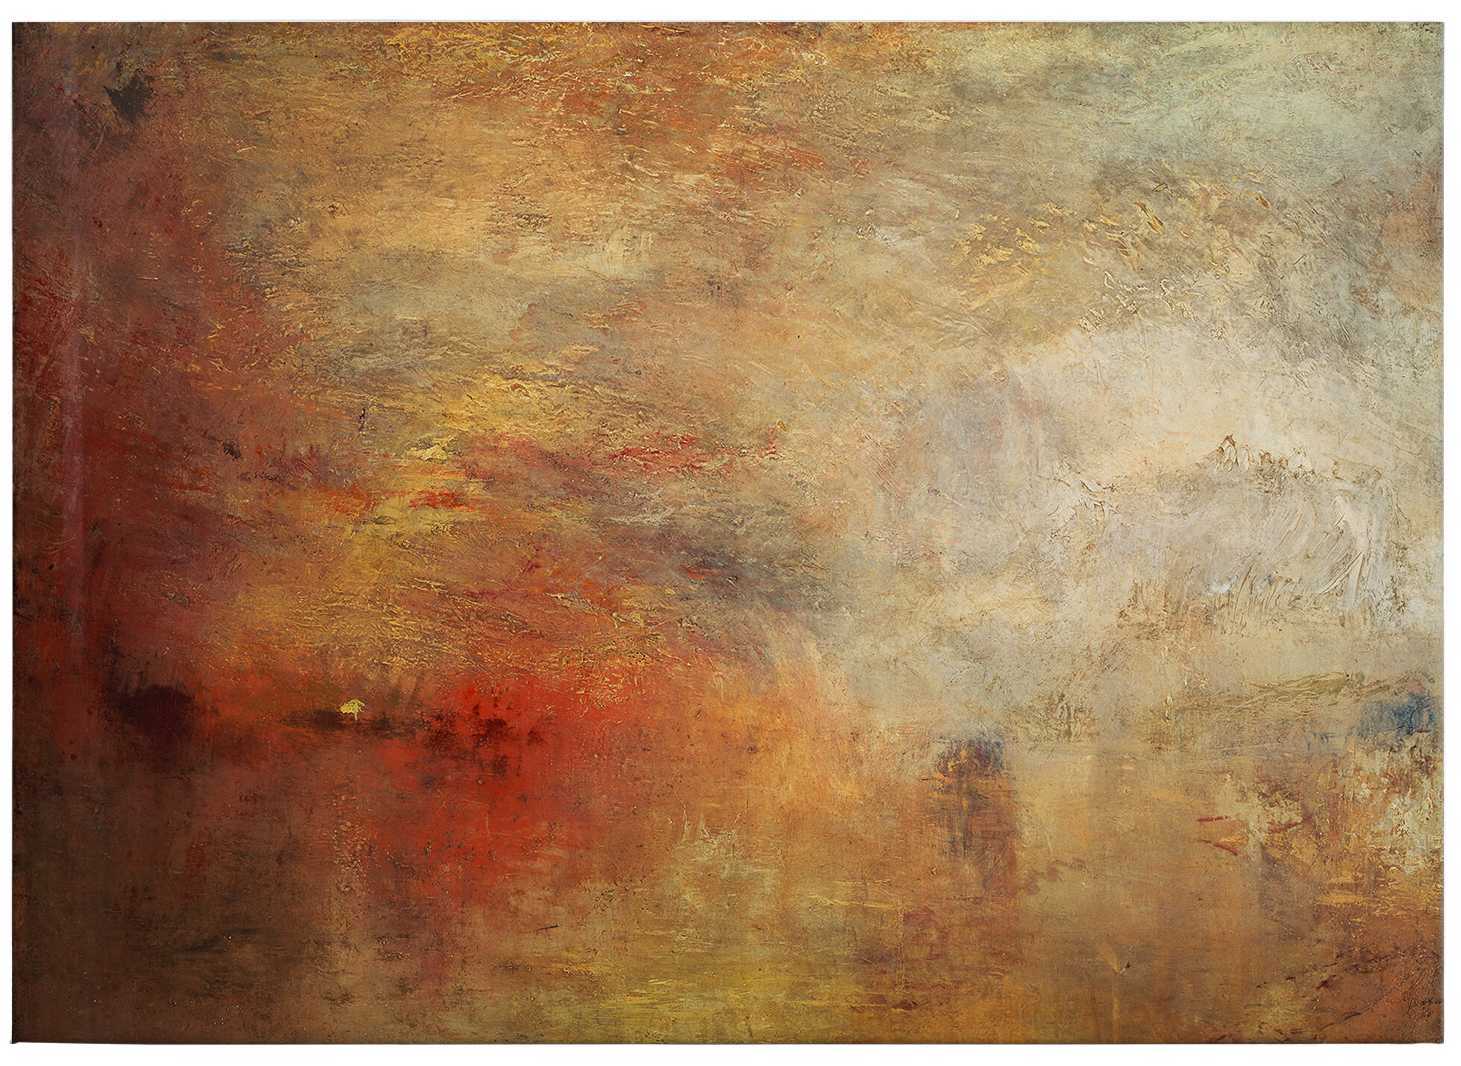             Lienzo Turner "Puesta de sol sobre el mar" - 0,70 m x 0,50 m
        